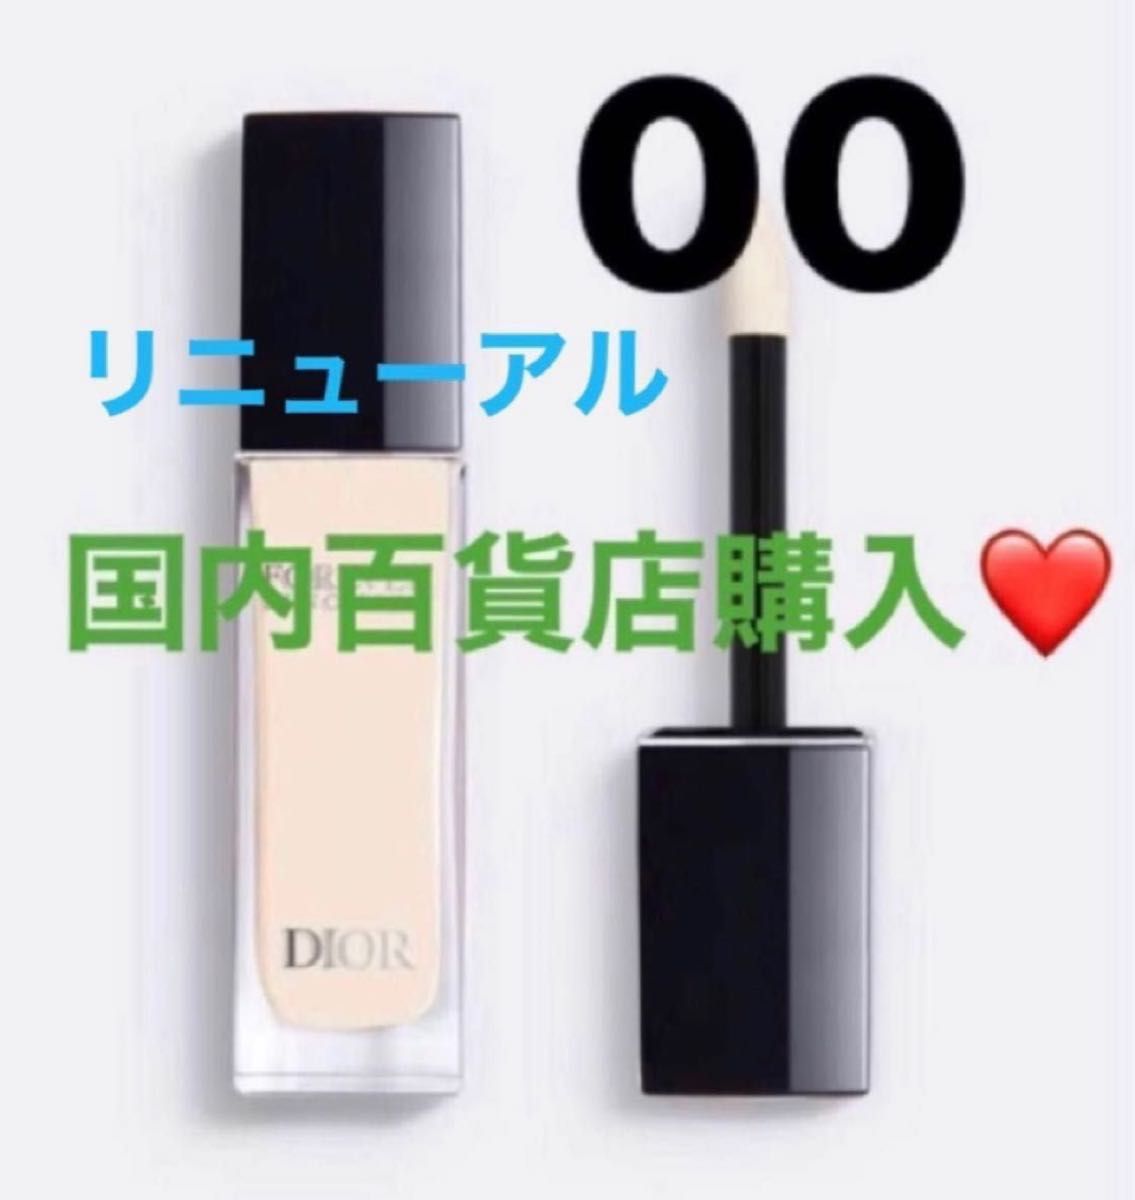 Dior ディオール スキンコレクト コンシーラー 00 - コンシーラー